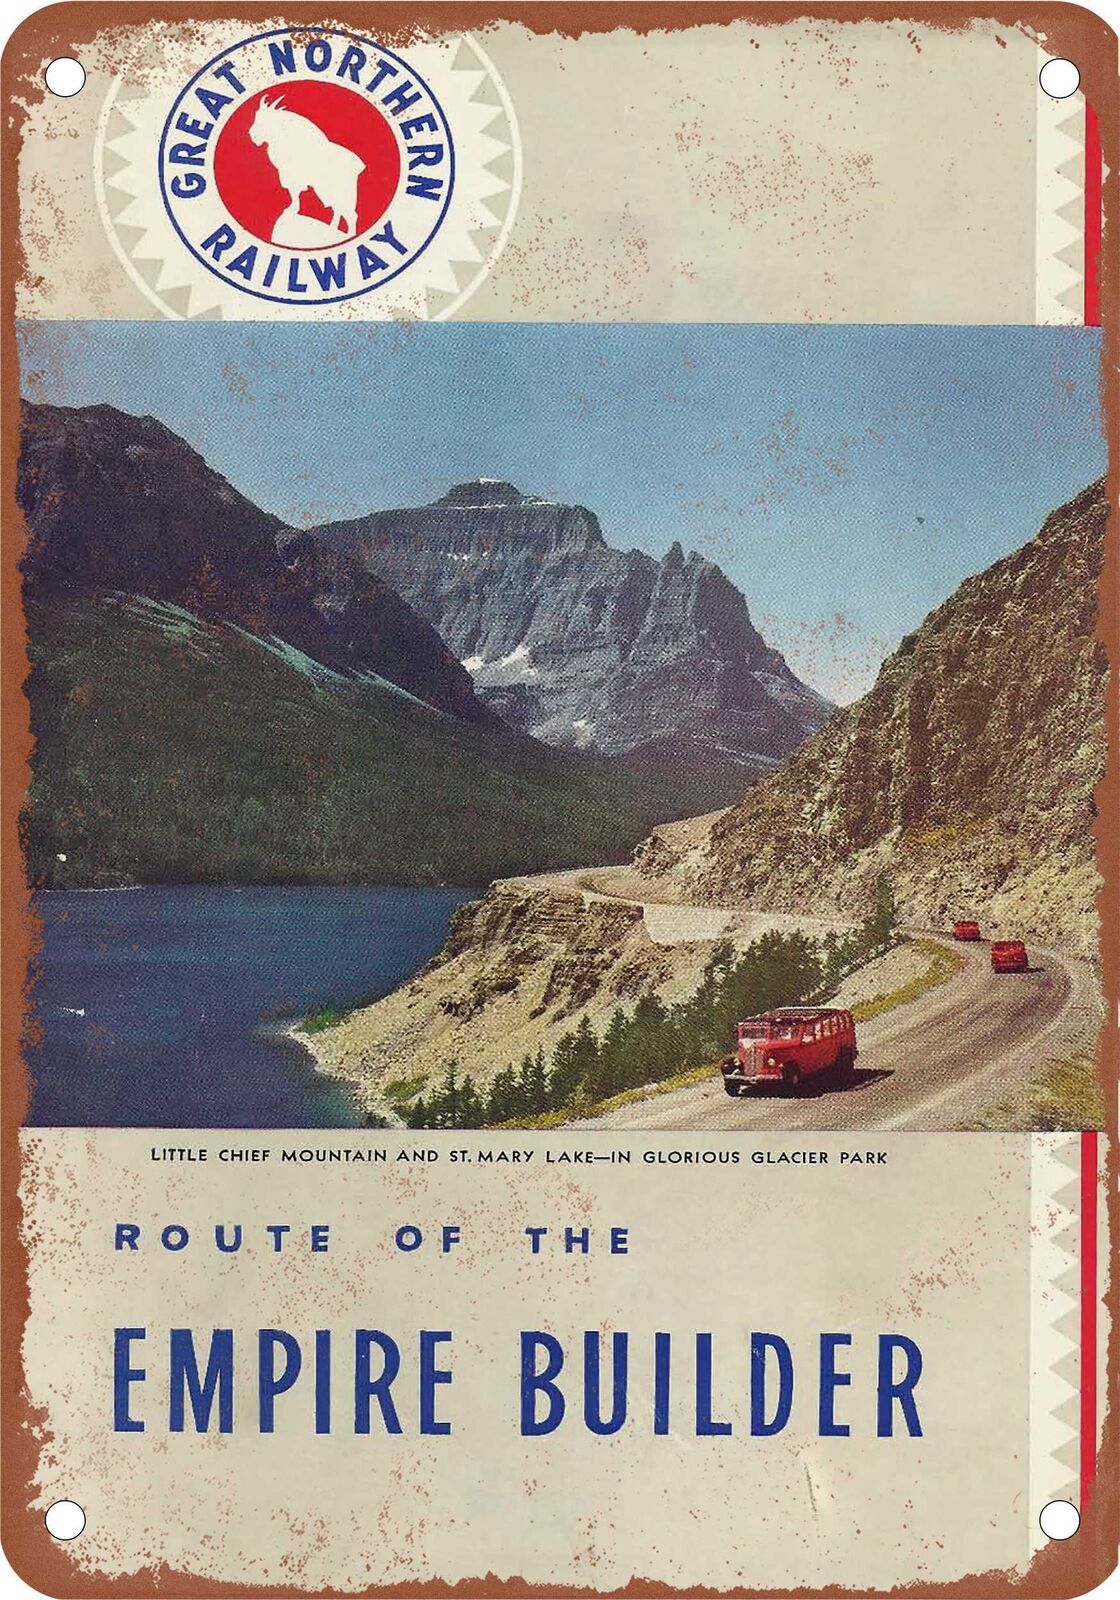 METAL SIGN - 1941 Great Northern Empire Builder Glacier - Vintage Rusty Look